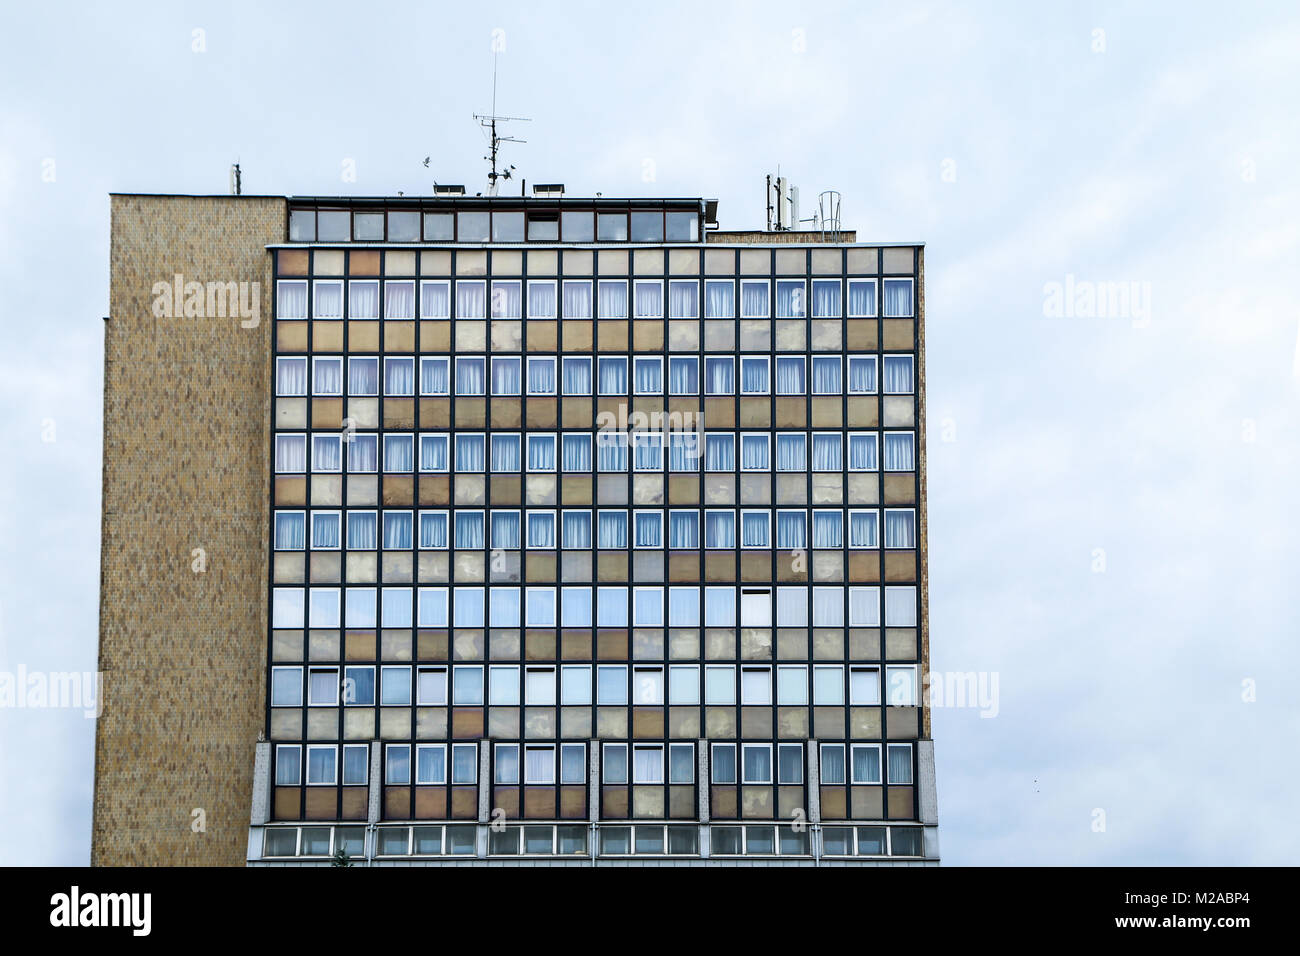 Una foto di un vecchio hotel comunista. Si tratta di un'illustrazione dell'architettura brutalist del passato. Foto Stock